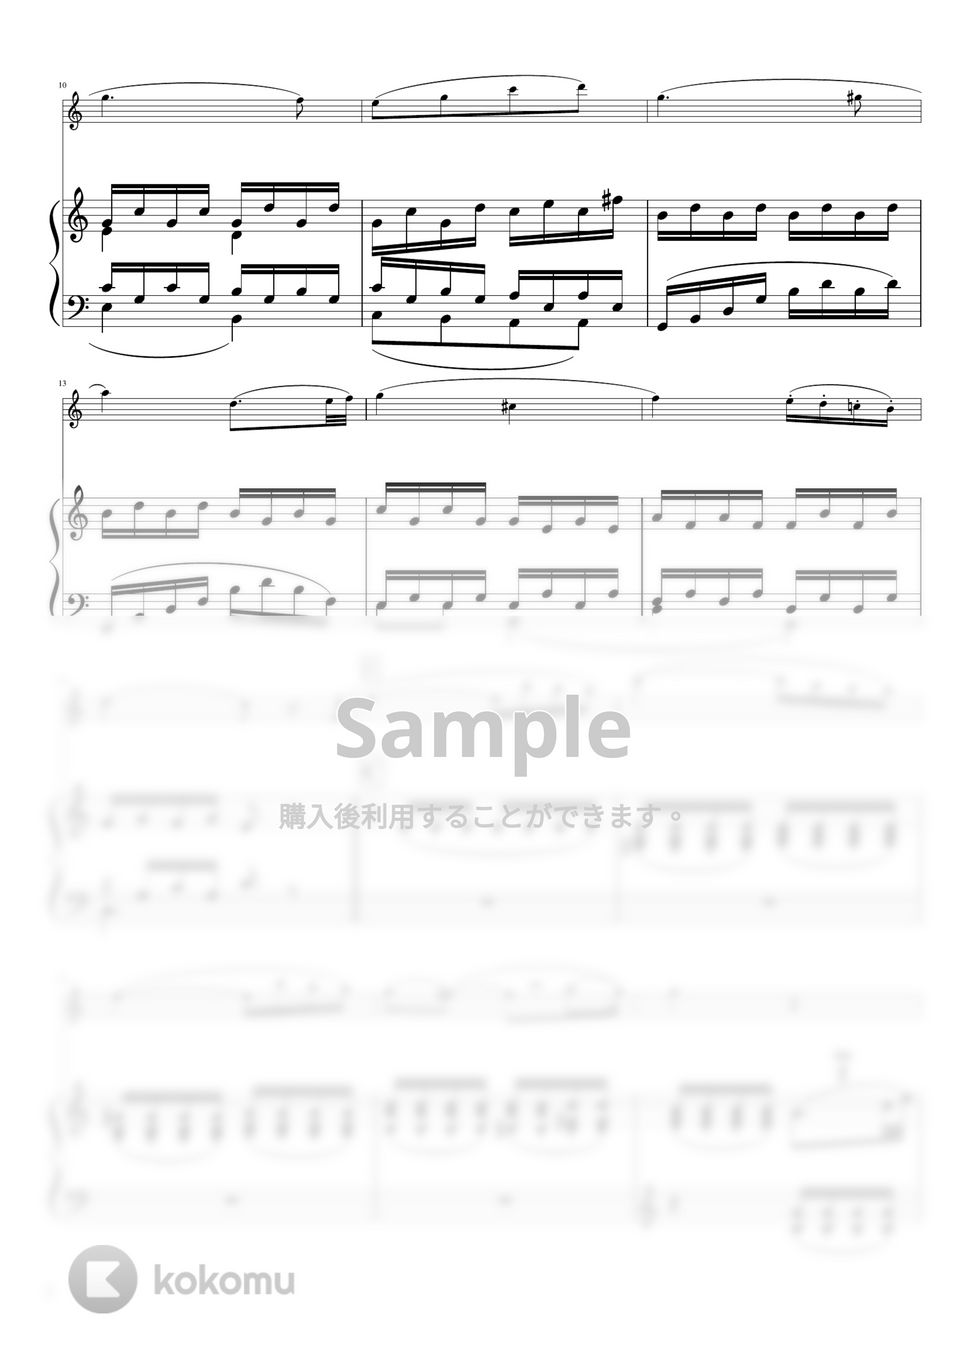 ベートーヴェン - ピアノソナタ第8番第2楽章「悲愴」 (C・フルート&ピアノ) by pfkaori